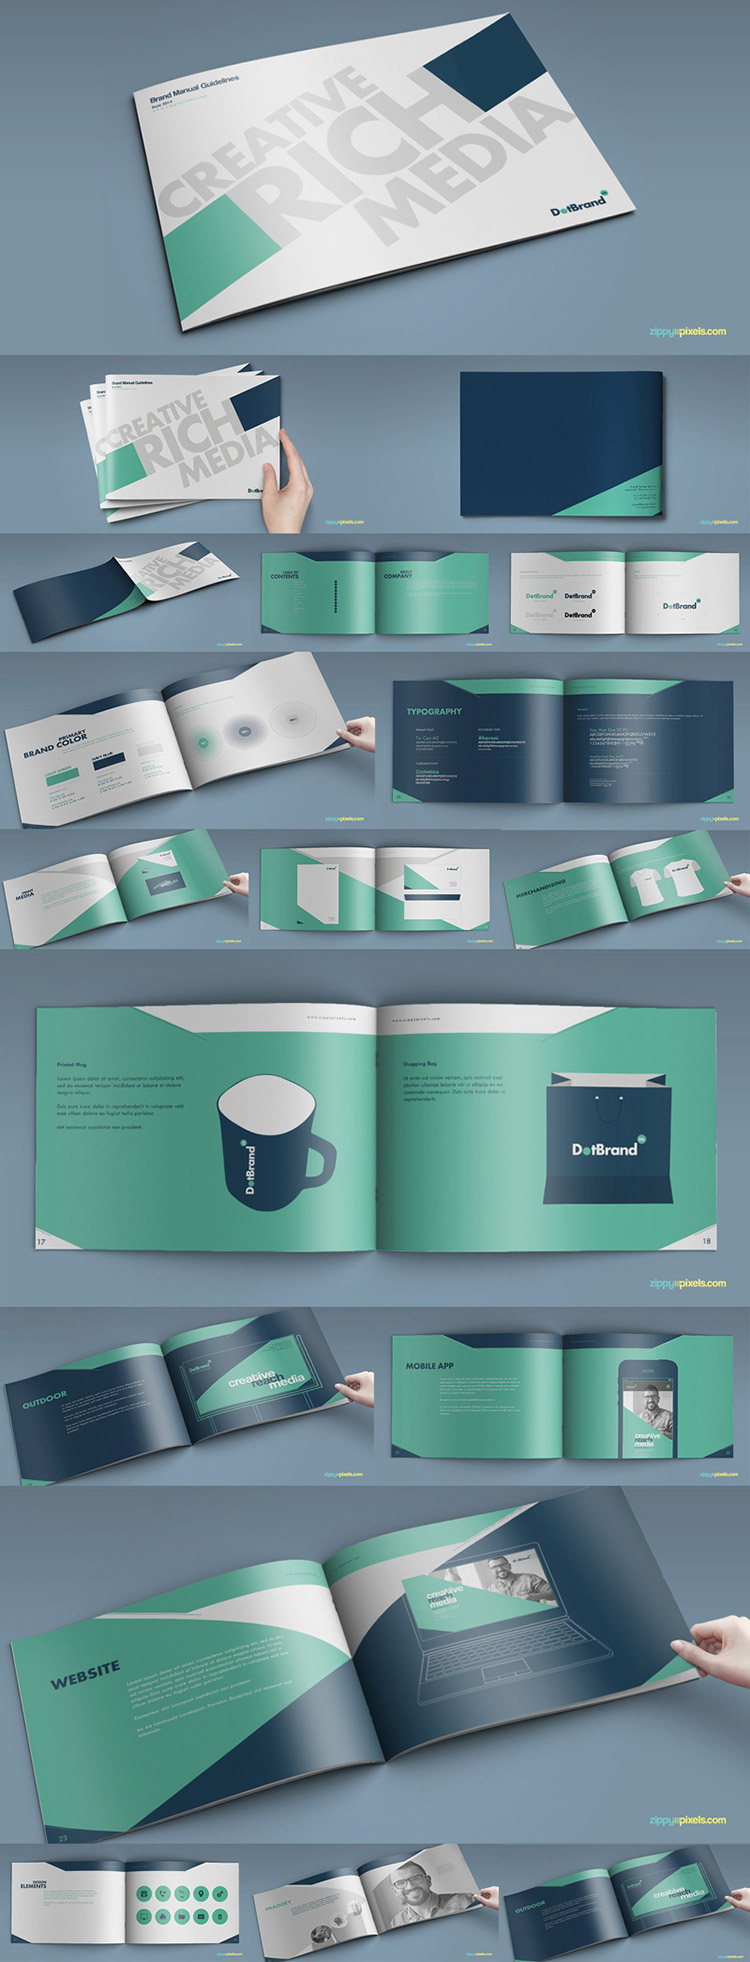 56#国外企业品牌VI手册子 企业画册品牌设计视觉形象画册模板素材